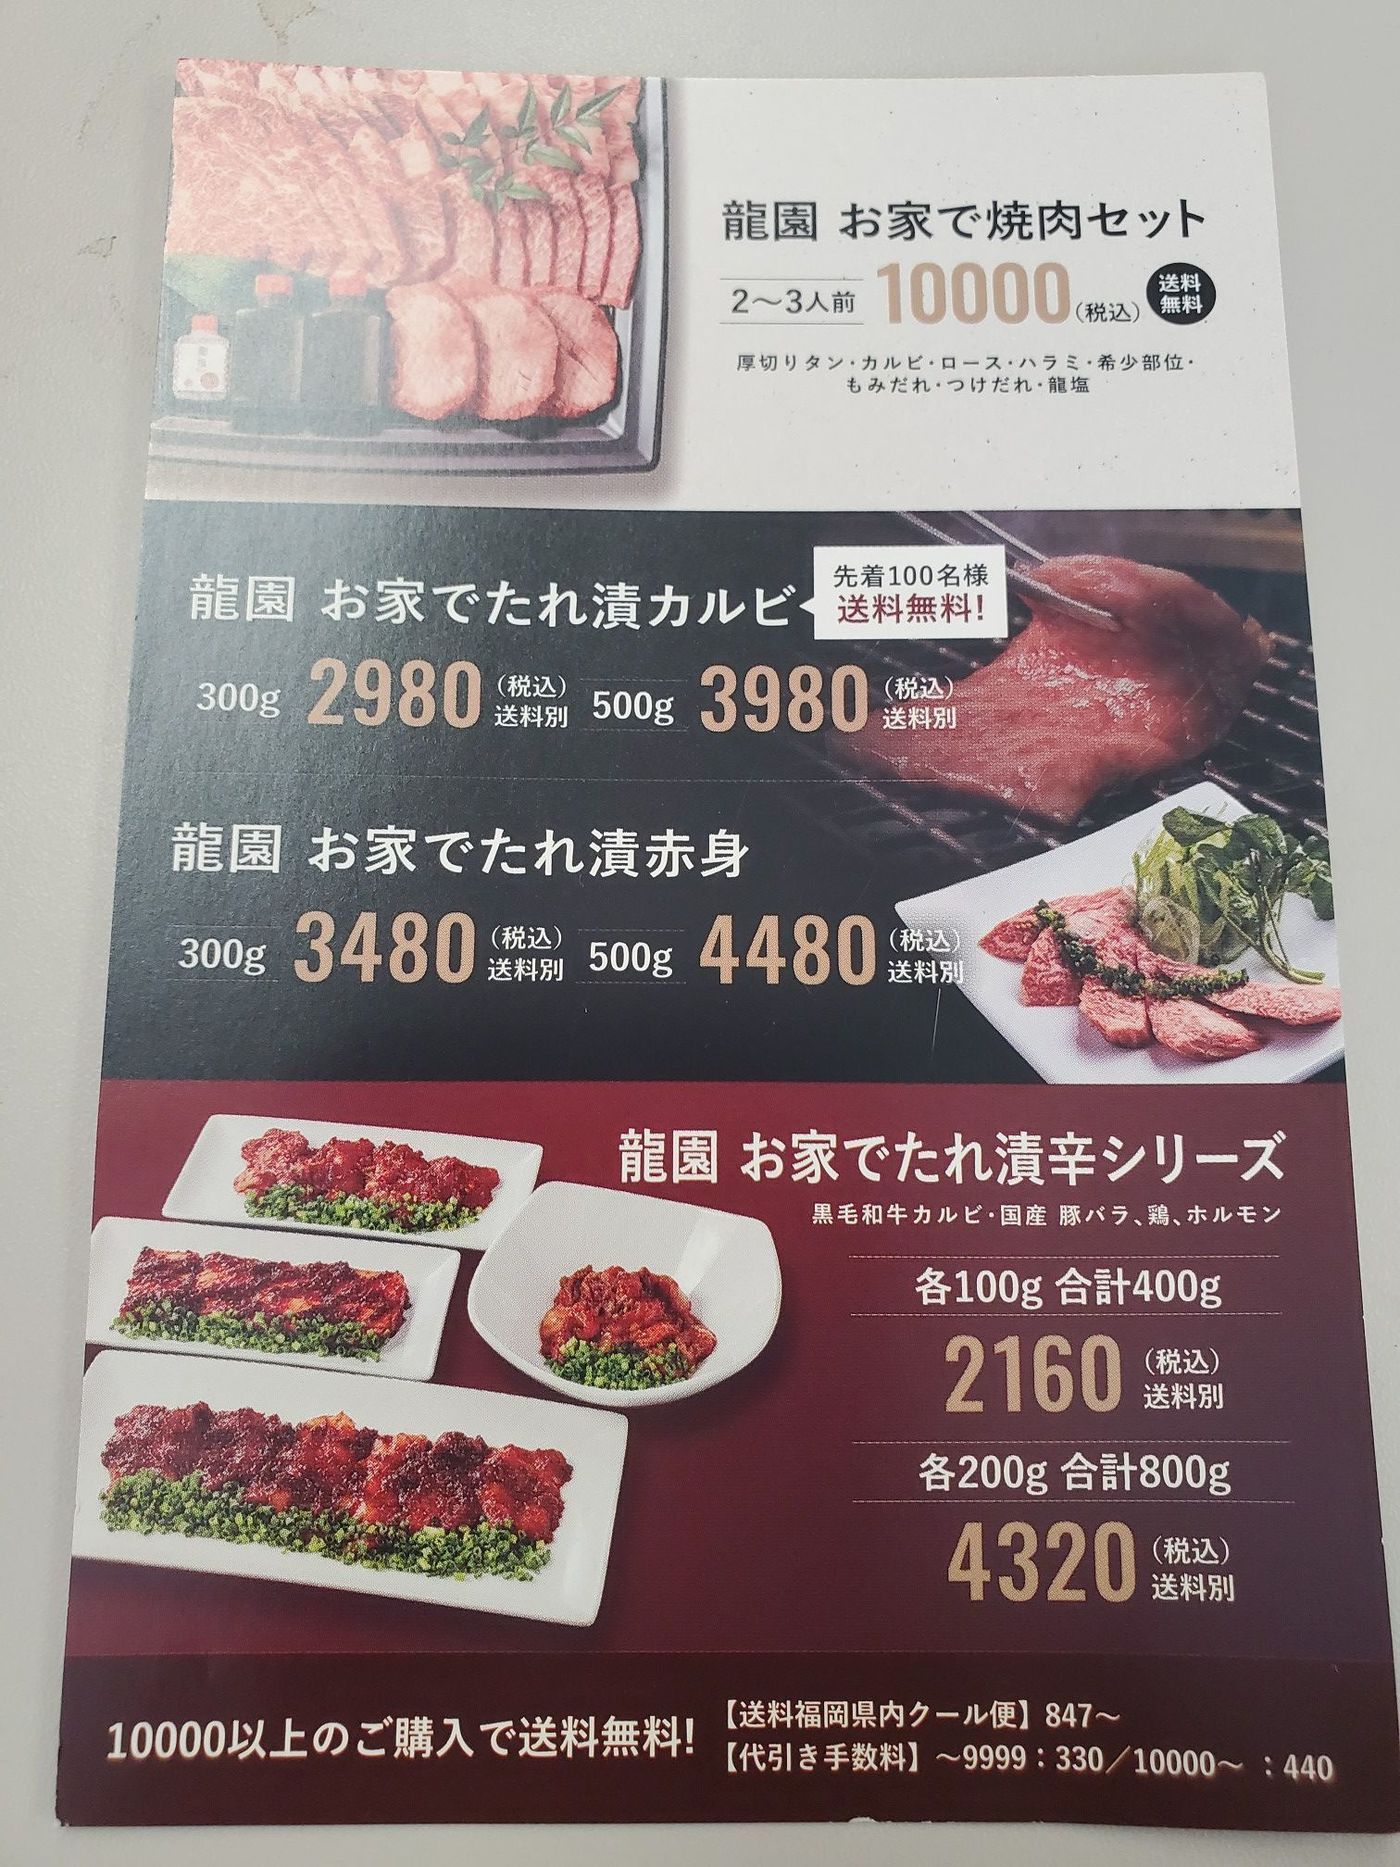 値引きする 焼き肉 龍園 福岡 2万円 - 優待券/割引券 - www 